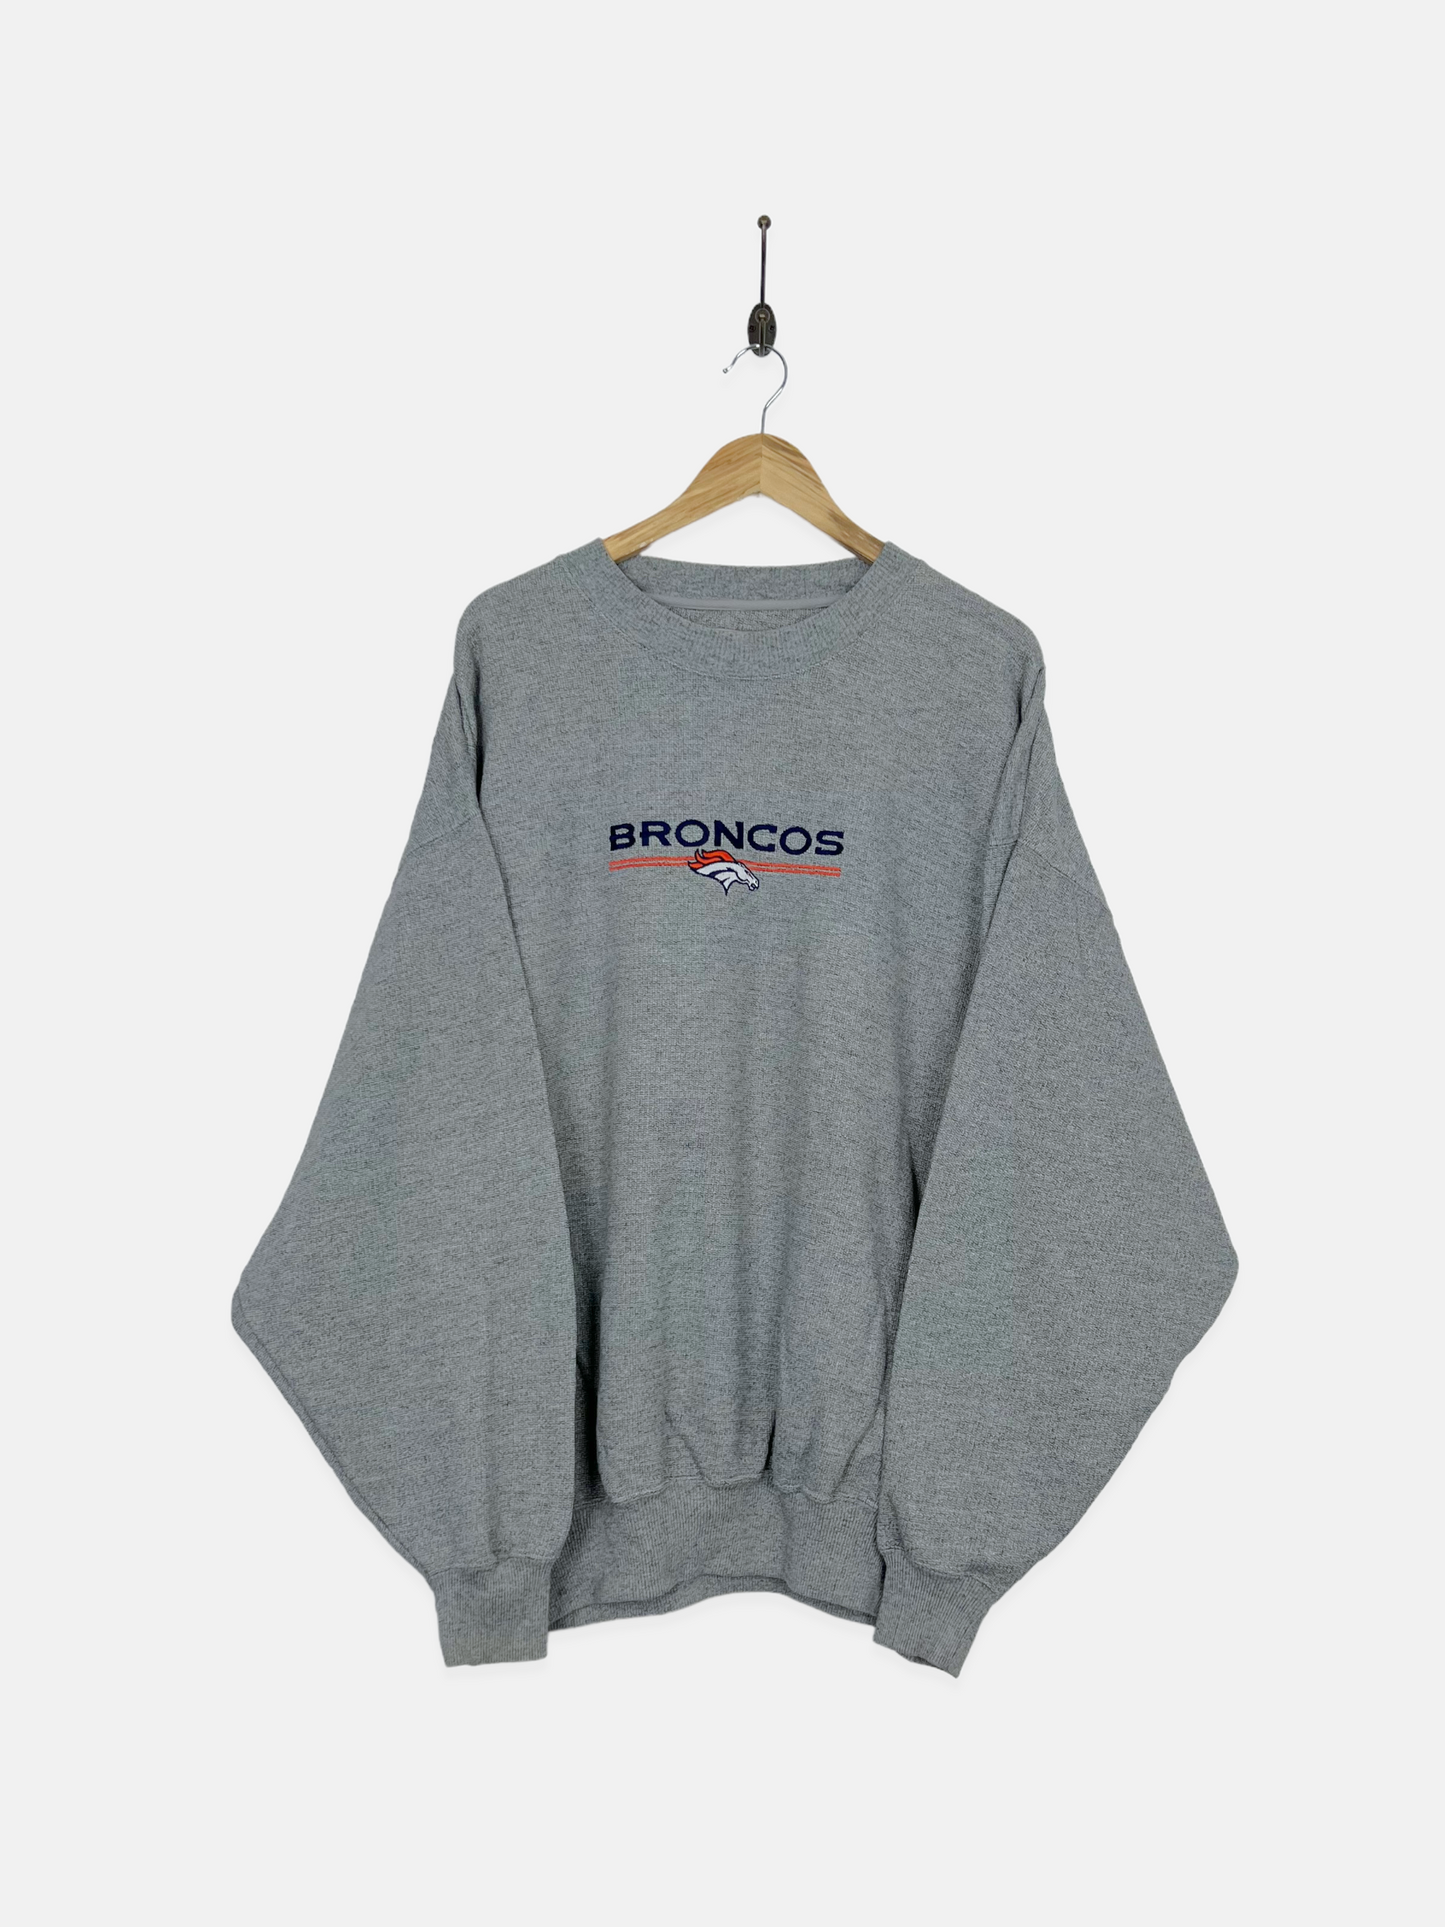 90's Denver Broncos NFL Embroidered Vintage Sweatshirt Size 2-3XL